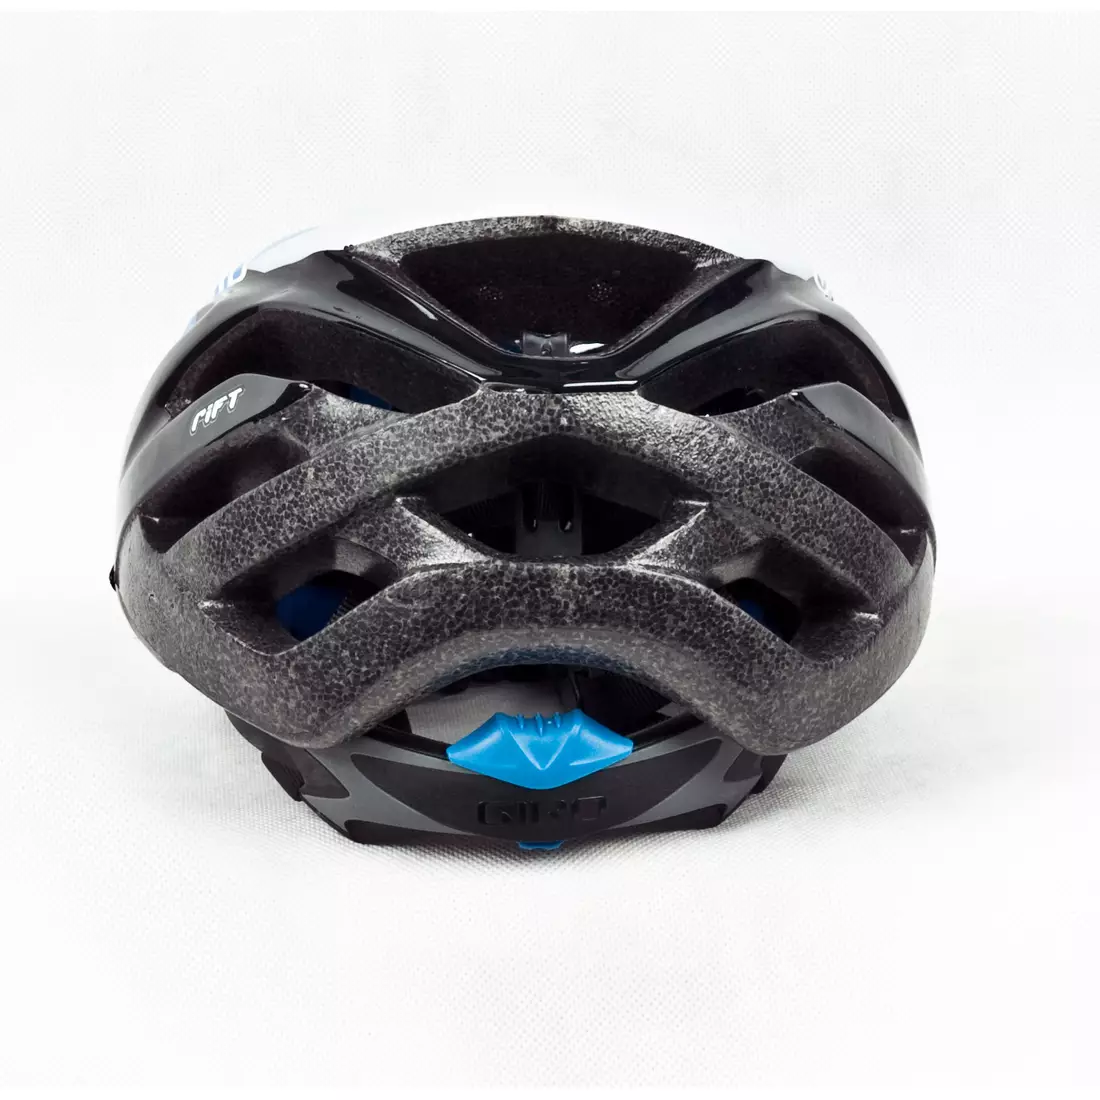 Cyklistická přilba GIRO RIFT, černá a modrá